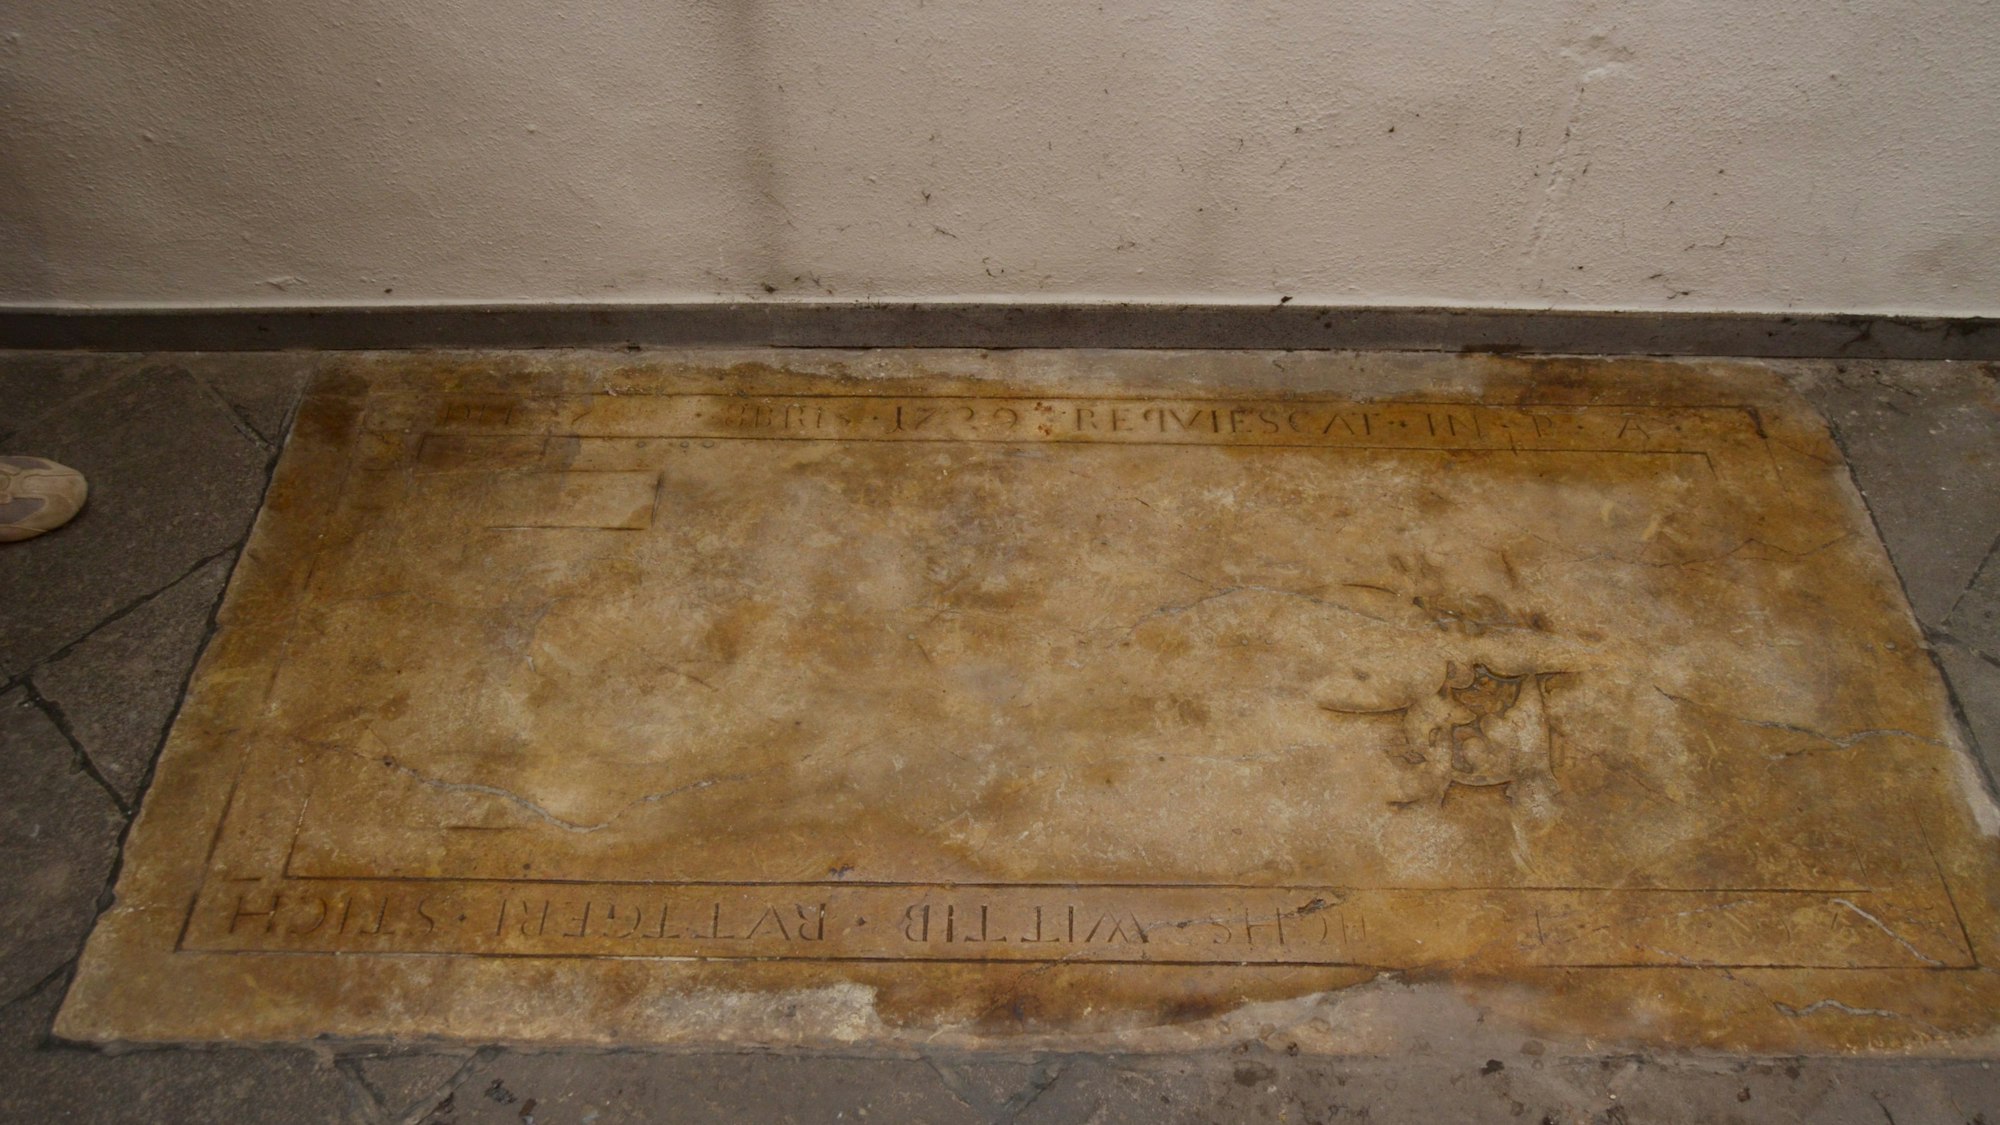 An den Rändern der Grabplatte sind Inschriften zu erkennen.